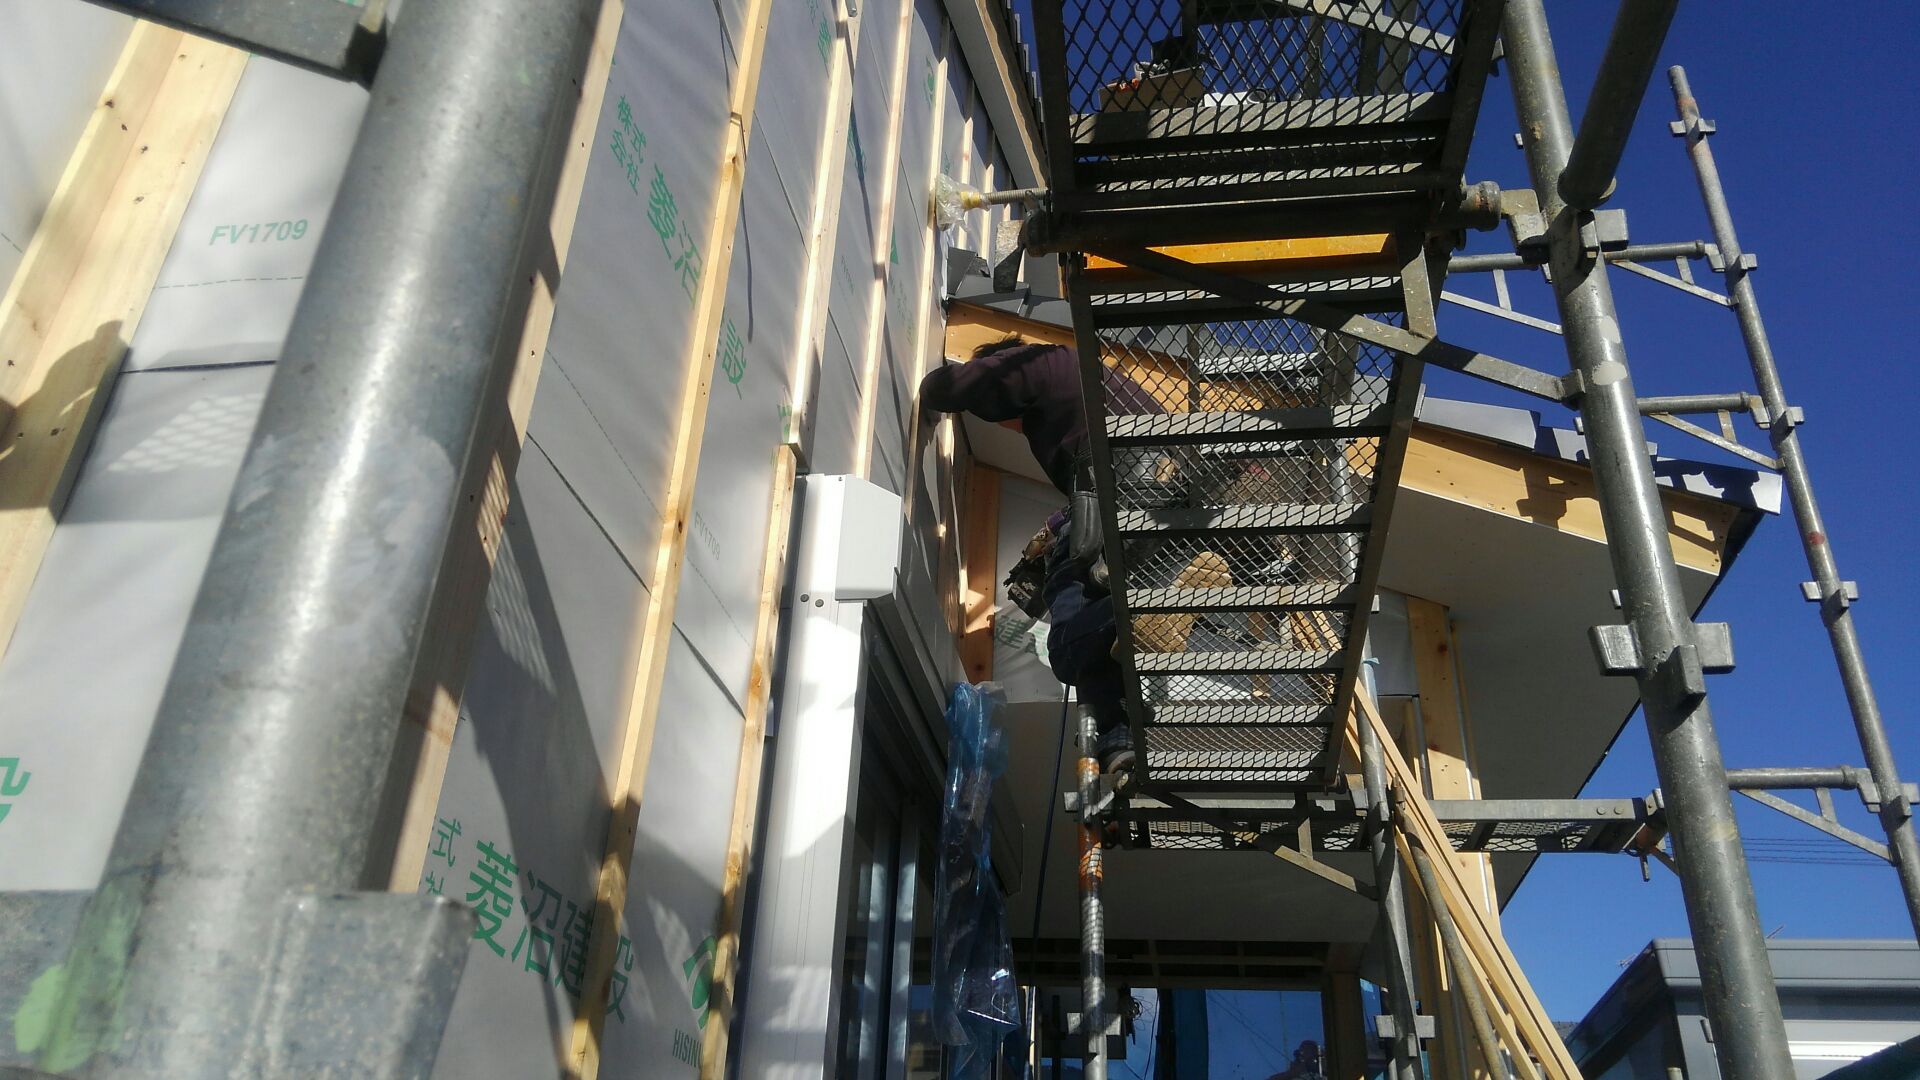 外壁工事、サイディング屋さんが通気胴縁（つうきどうぶち）の施工をはじめました。壁の板張りやボード張りなどを受けるための下地部材に、通気層を設けるために施工したものを通気胴縁と言います。